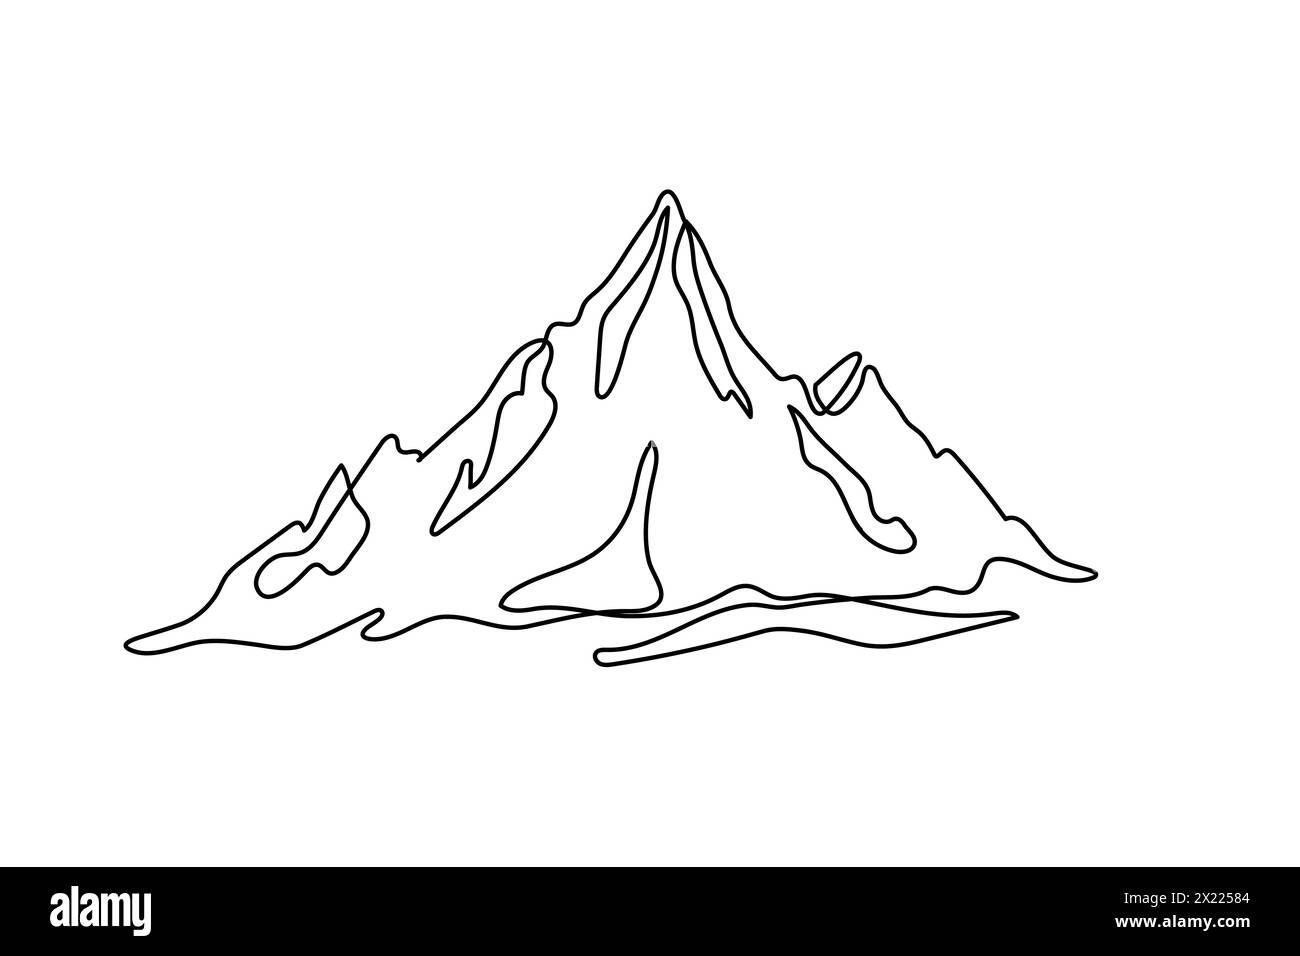 Eine durchgehende Linienzeichnung einer Bergkette auf weißem Hintergrund. Webbanner mit Befestigungselementen in einfacher linearer Ausführung. Kritzelvektorillustrati Stock Vektor